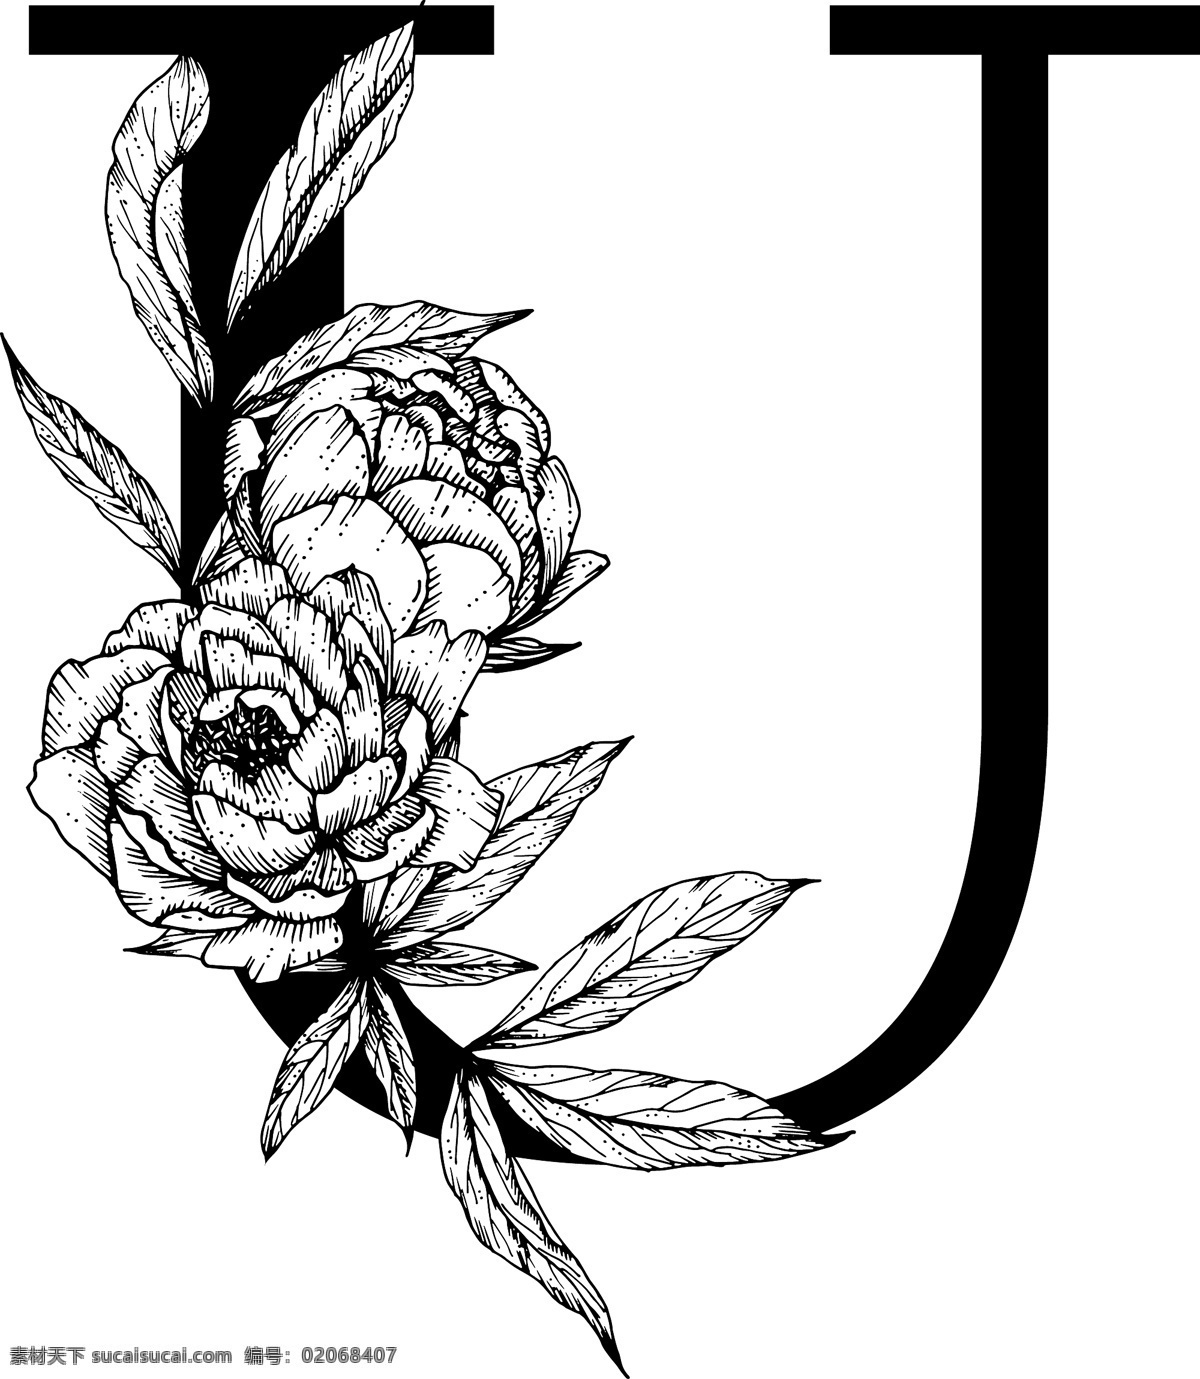 字母图片 花朵装饰字母 英文 字母 字体 花朵 鲜花 黑白 线描 素描 白描 创意设计 设计素材 矢量图 矢量素材 标识 生活百科 学习用品